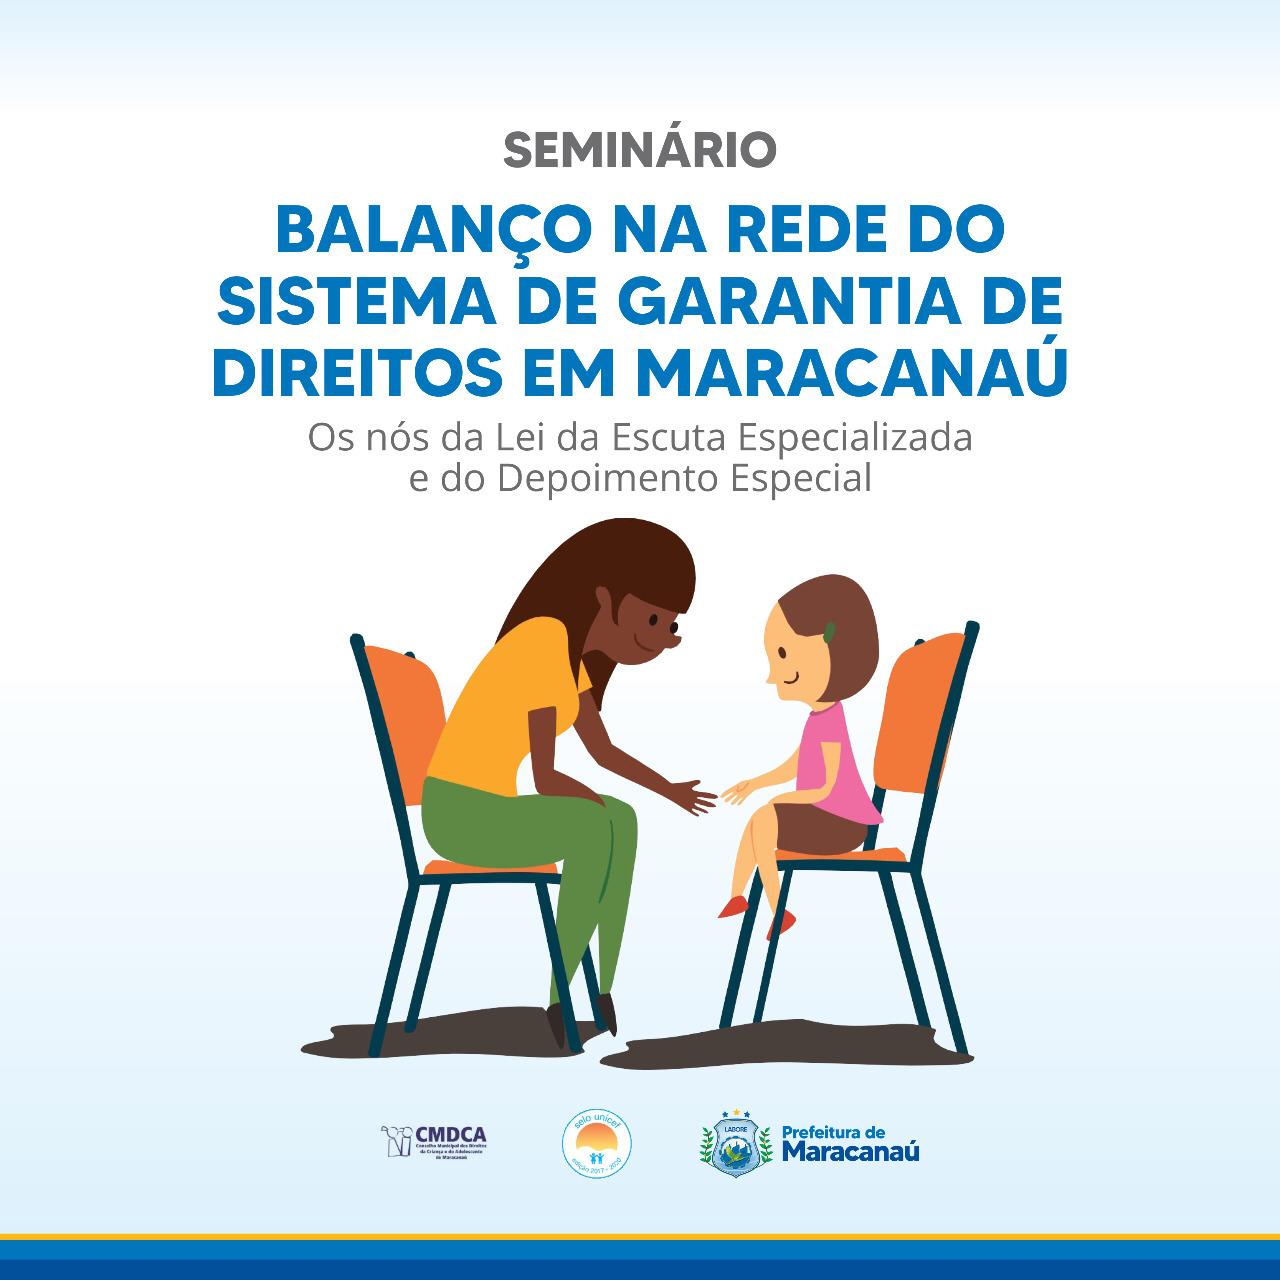 Você está visualizando atualmente Seminário Balanço na rede do sistema de garantia de direitos é realizado em Maracanaú